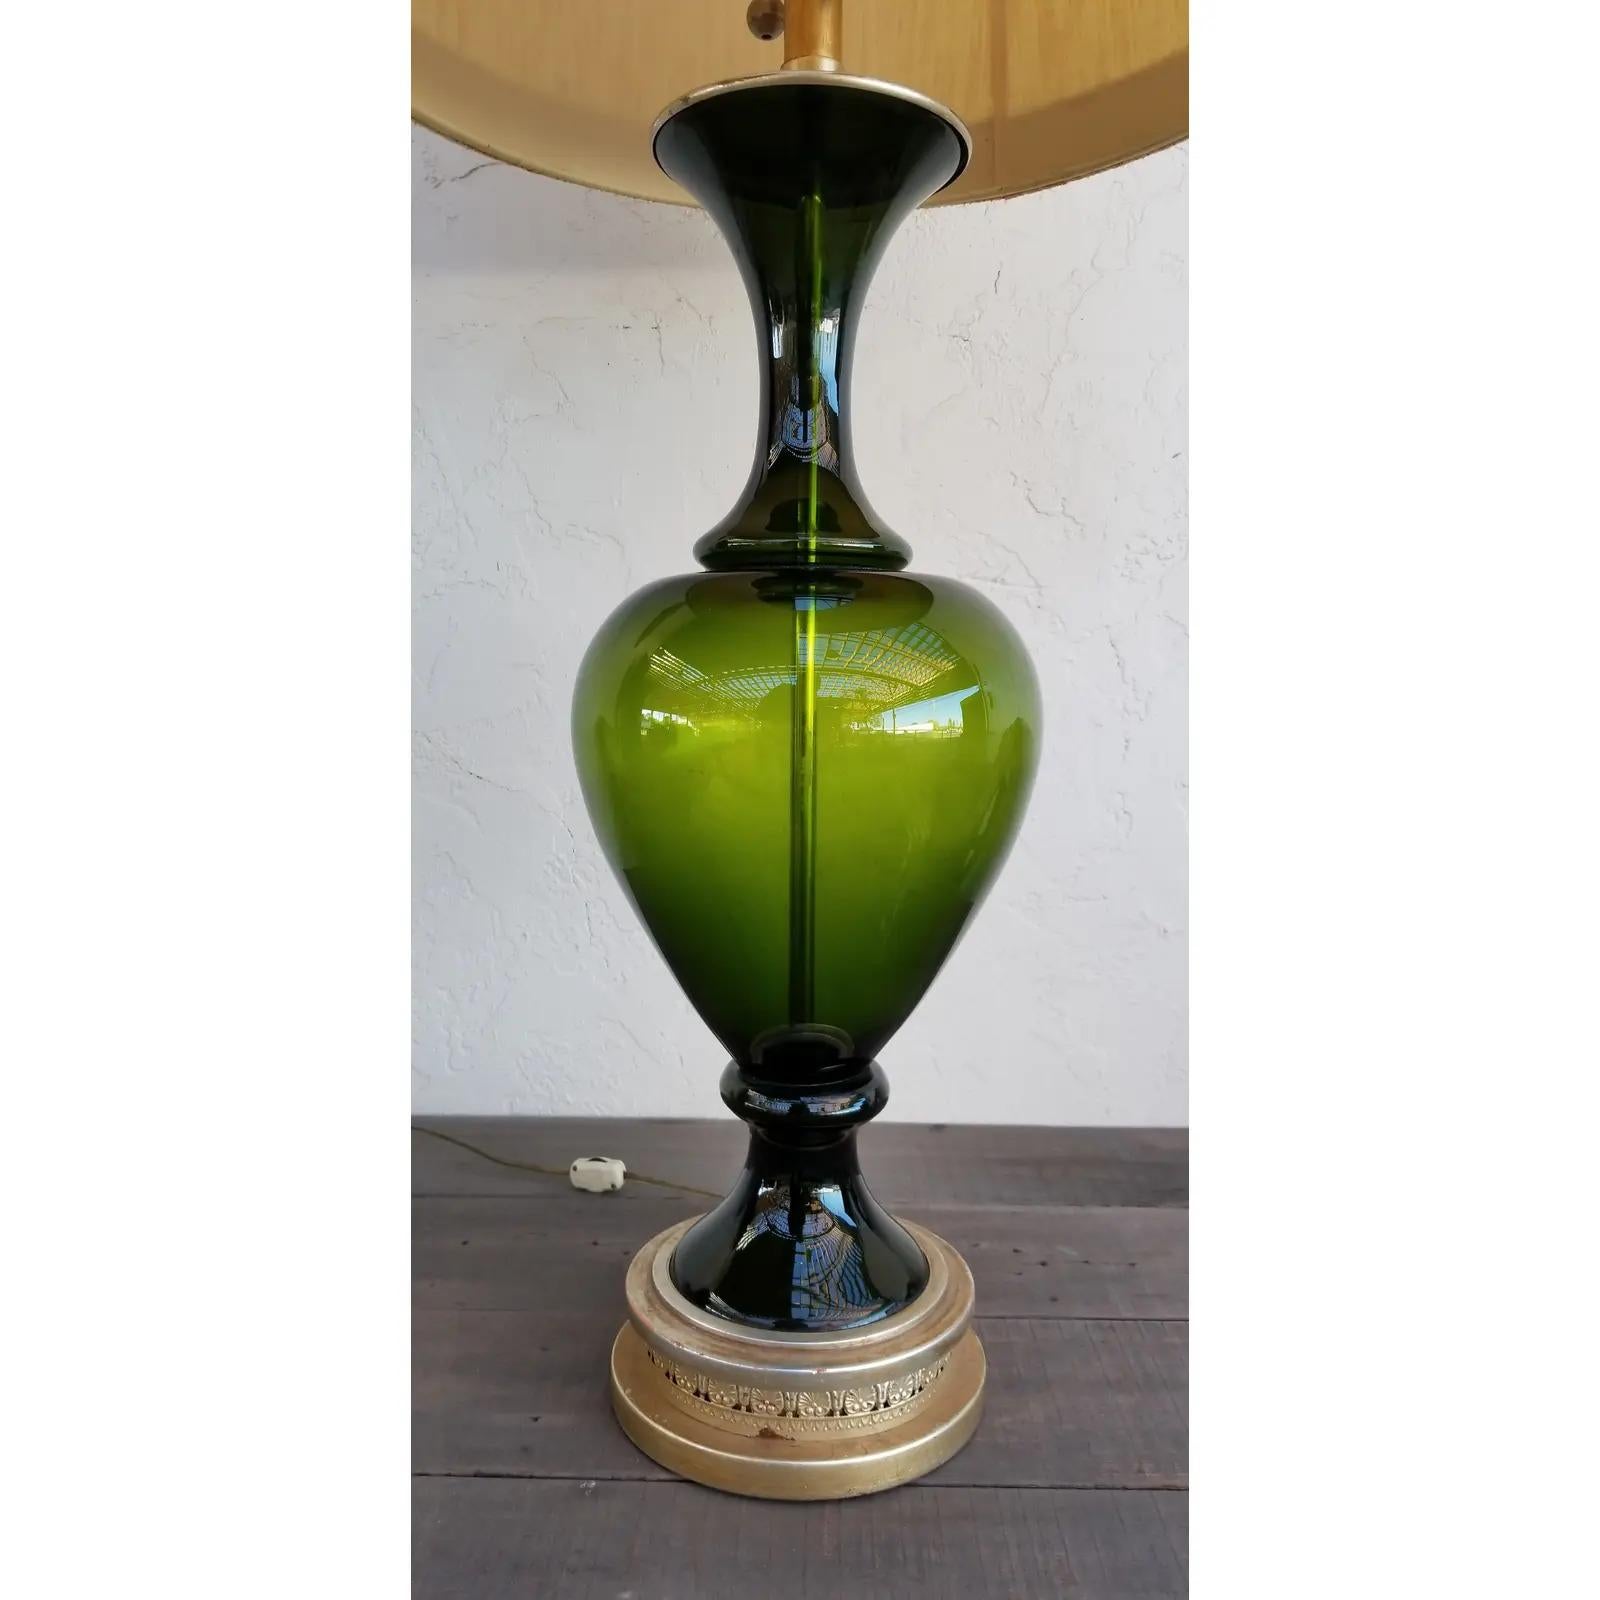 Une lampe de table Marbro en verre vert tourné, conservant son abat-jour original avec un motif de clé grecque. Excellent état d'origine. La base mesure 7 pieds de diamètre.

Marbro Lamp Company
La société a été fondée par Morris Markoff et son